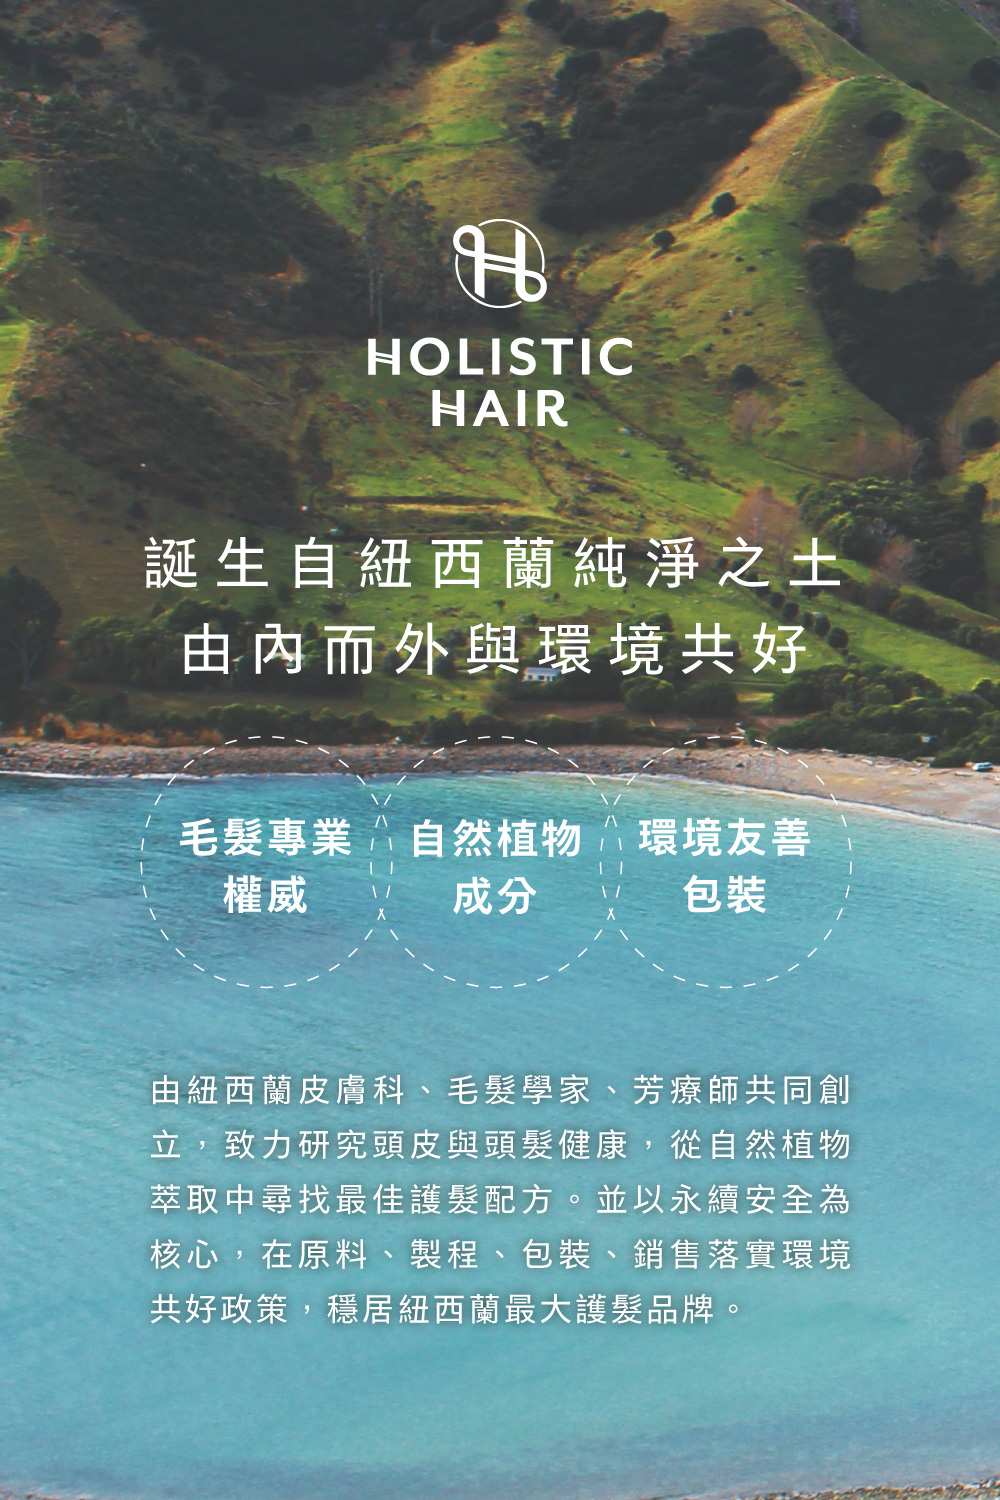 Holistic Hair誕生自紐西蘭純淨之土，由內而外與環境共好，由紐西蘭皮膚科、毛髮學家、芳療師共同創立，致力研究頭皮與頭髮健康，從自然植物萃取中尋找最佳護髮配方。 並以永續安全為核心，在原料、製程、包裝、銷售落實環境共好政策，穩居紐西蘭最大護髮品牌。